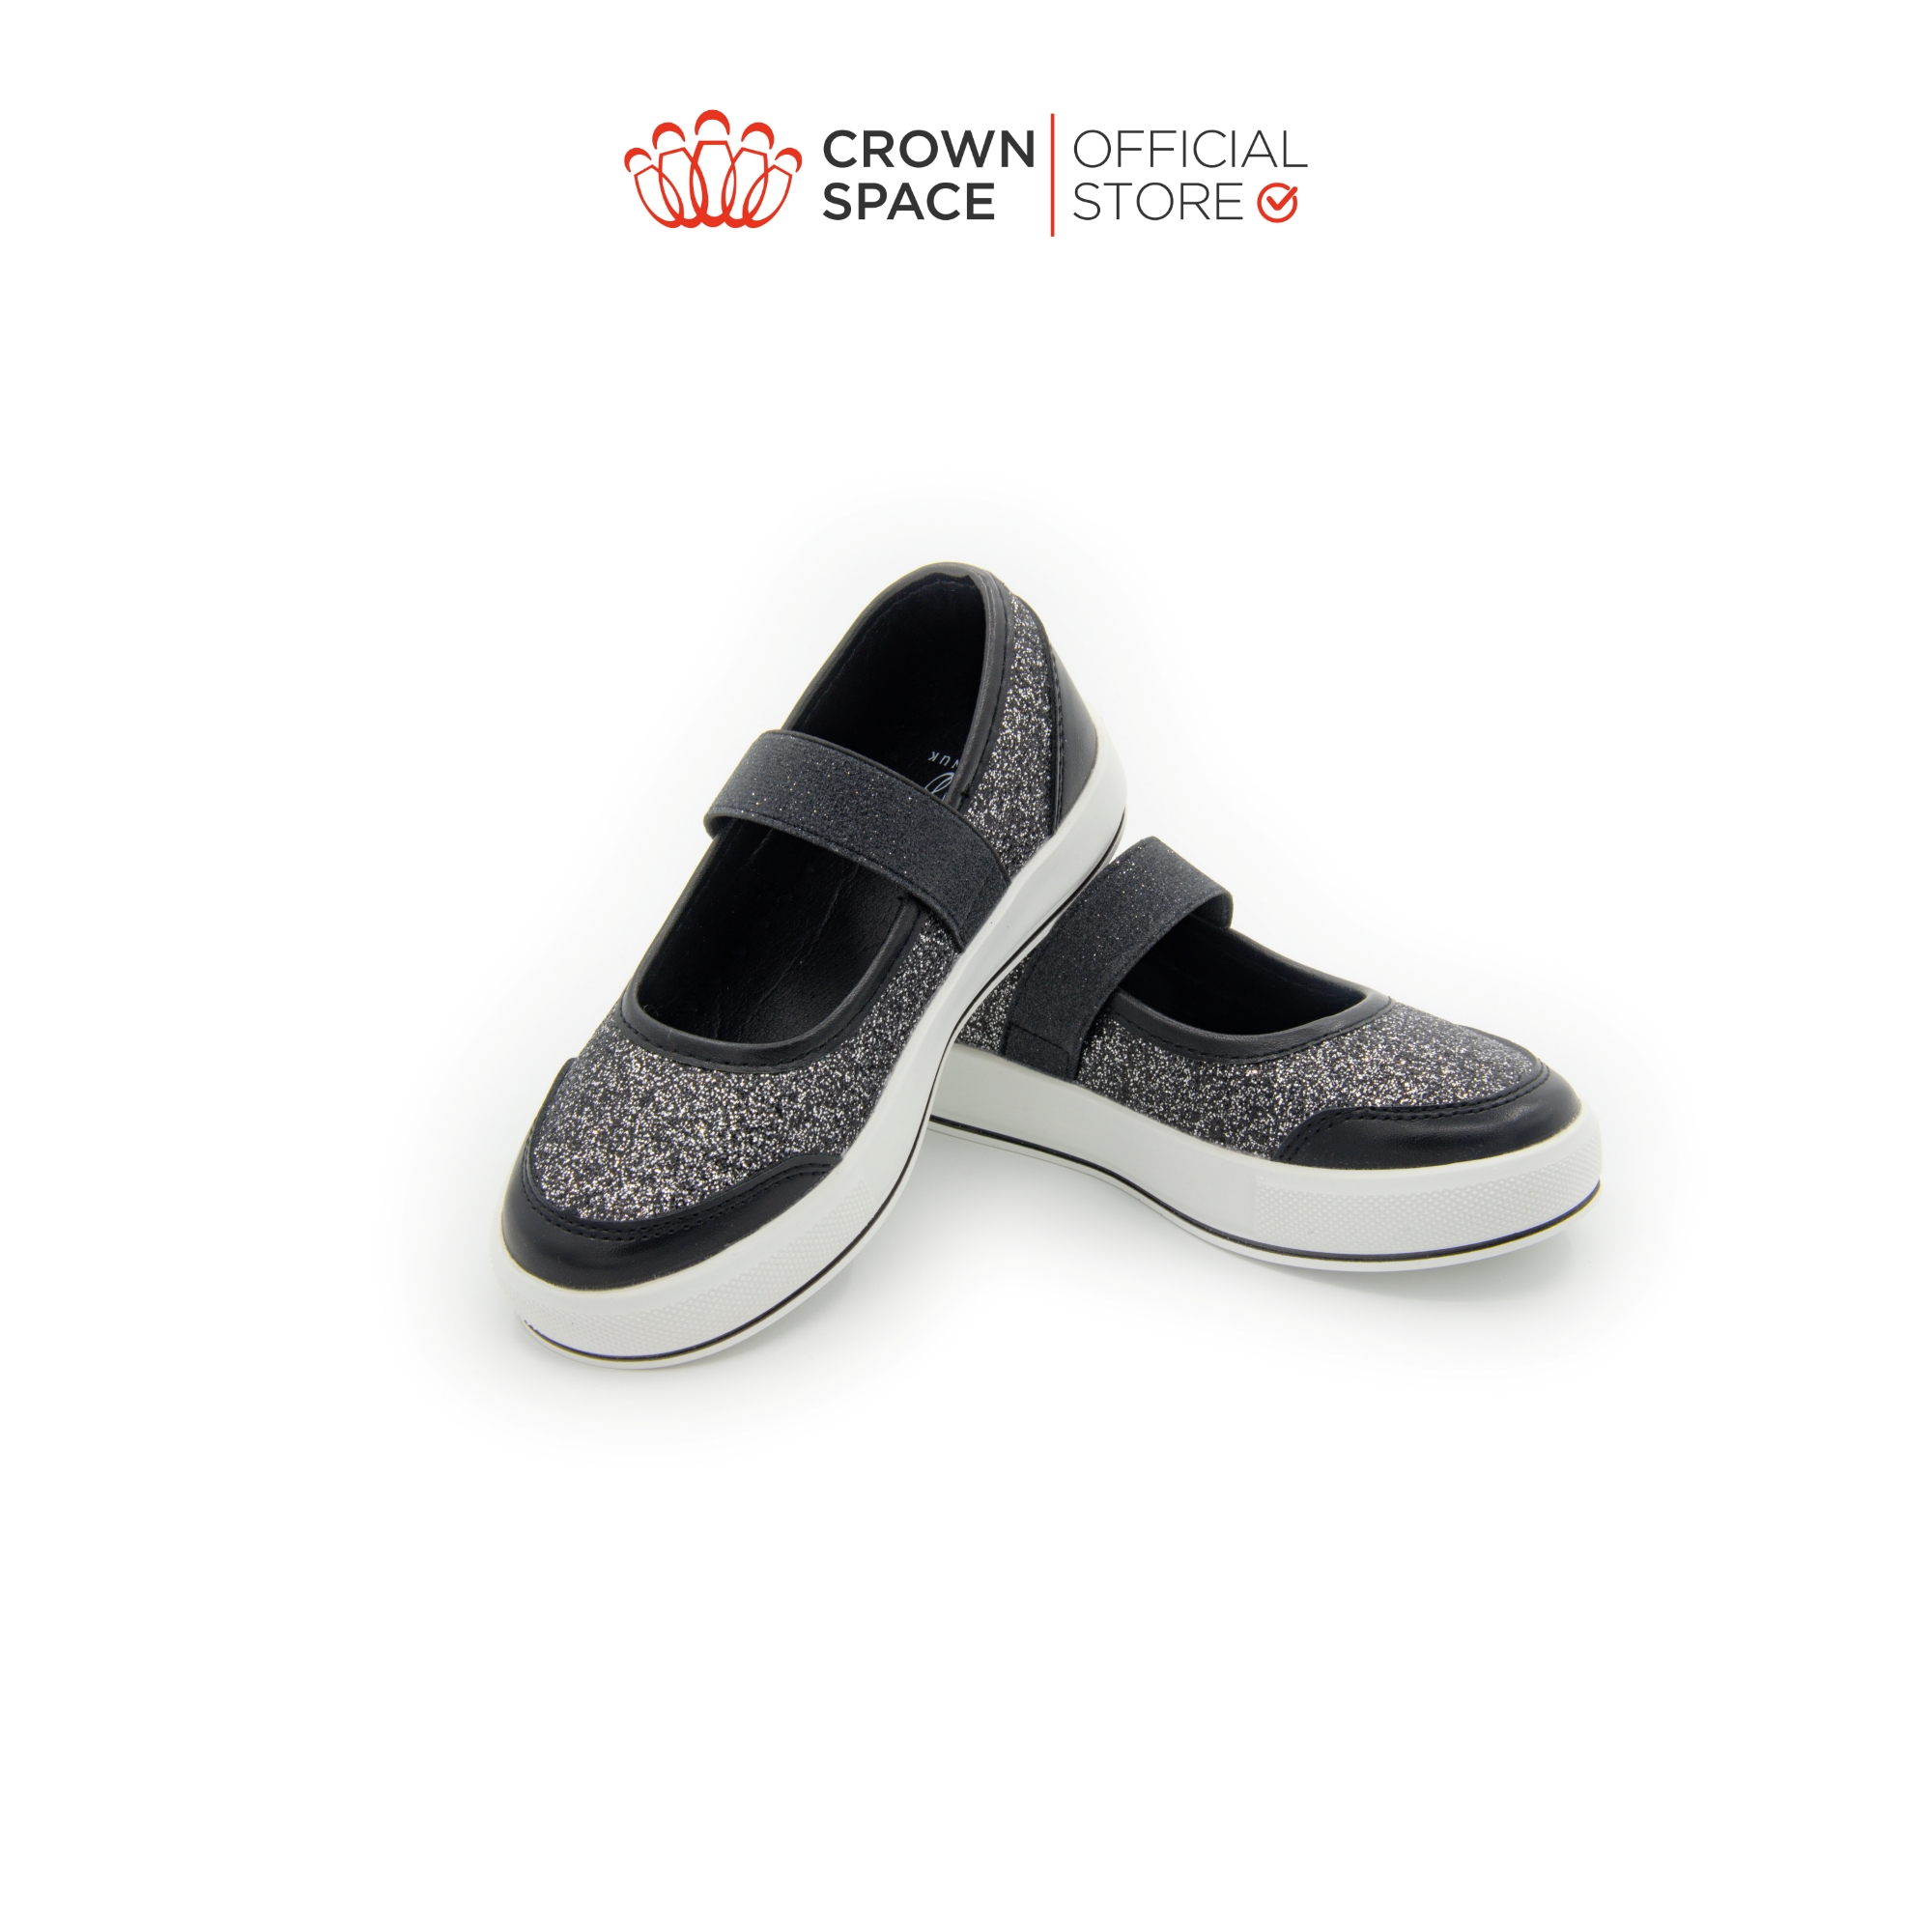 Giày Skimmer Bé Gái Đi Học Siêu Nhẹ Crown Space UK CRUK258 Size 26 Đến Size 35 Từ 4-12 Tuổi